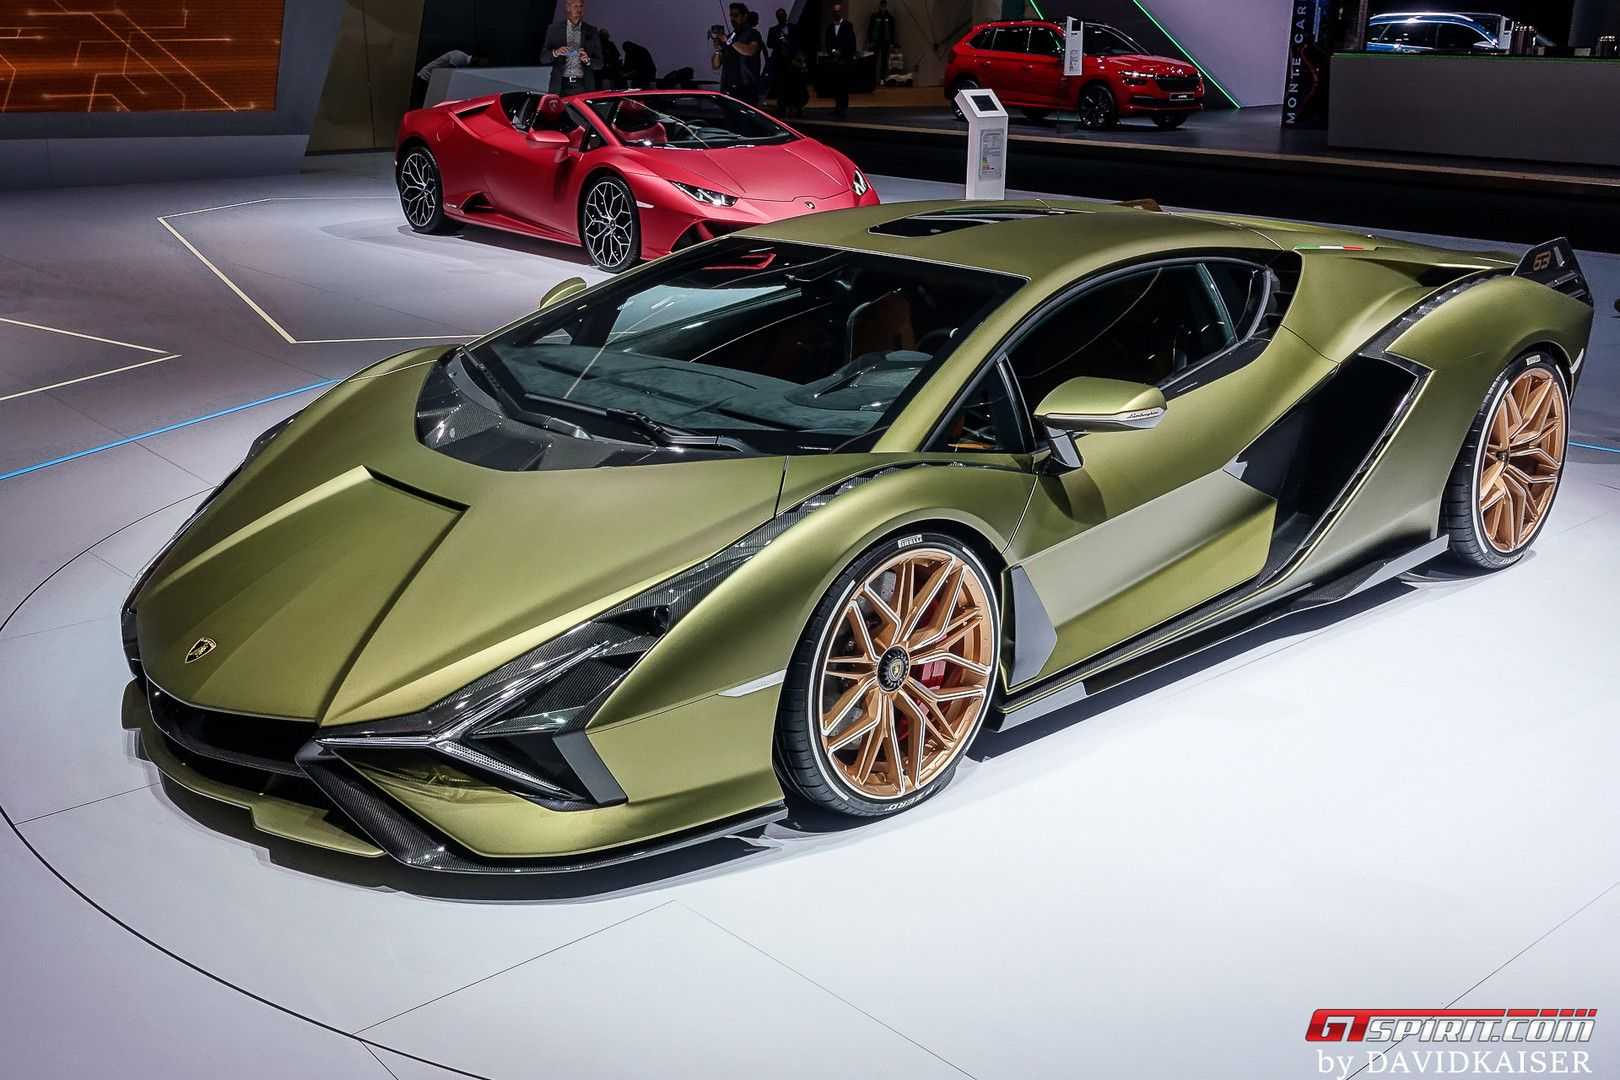 В 2022 году модели Lamborghini Urus исполнилось пять лет, что производитель отметил выпуском сразу двух рестайлинговых версий